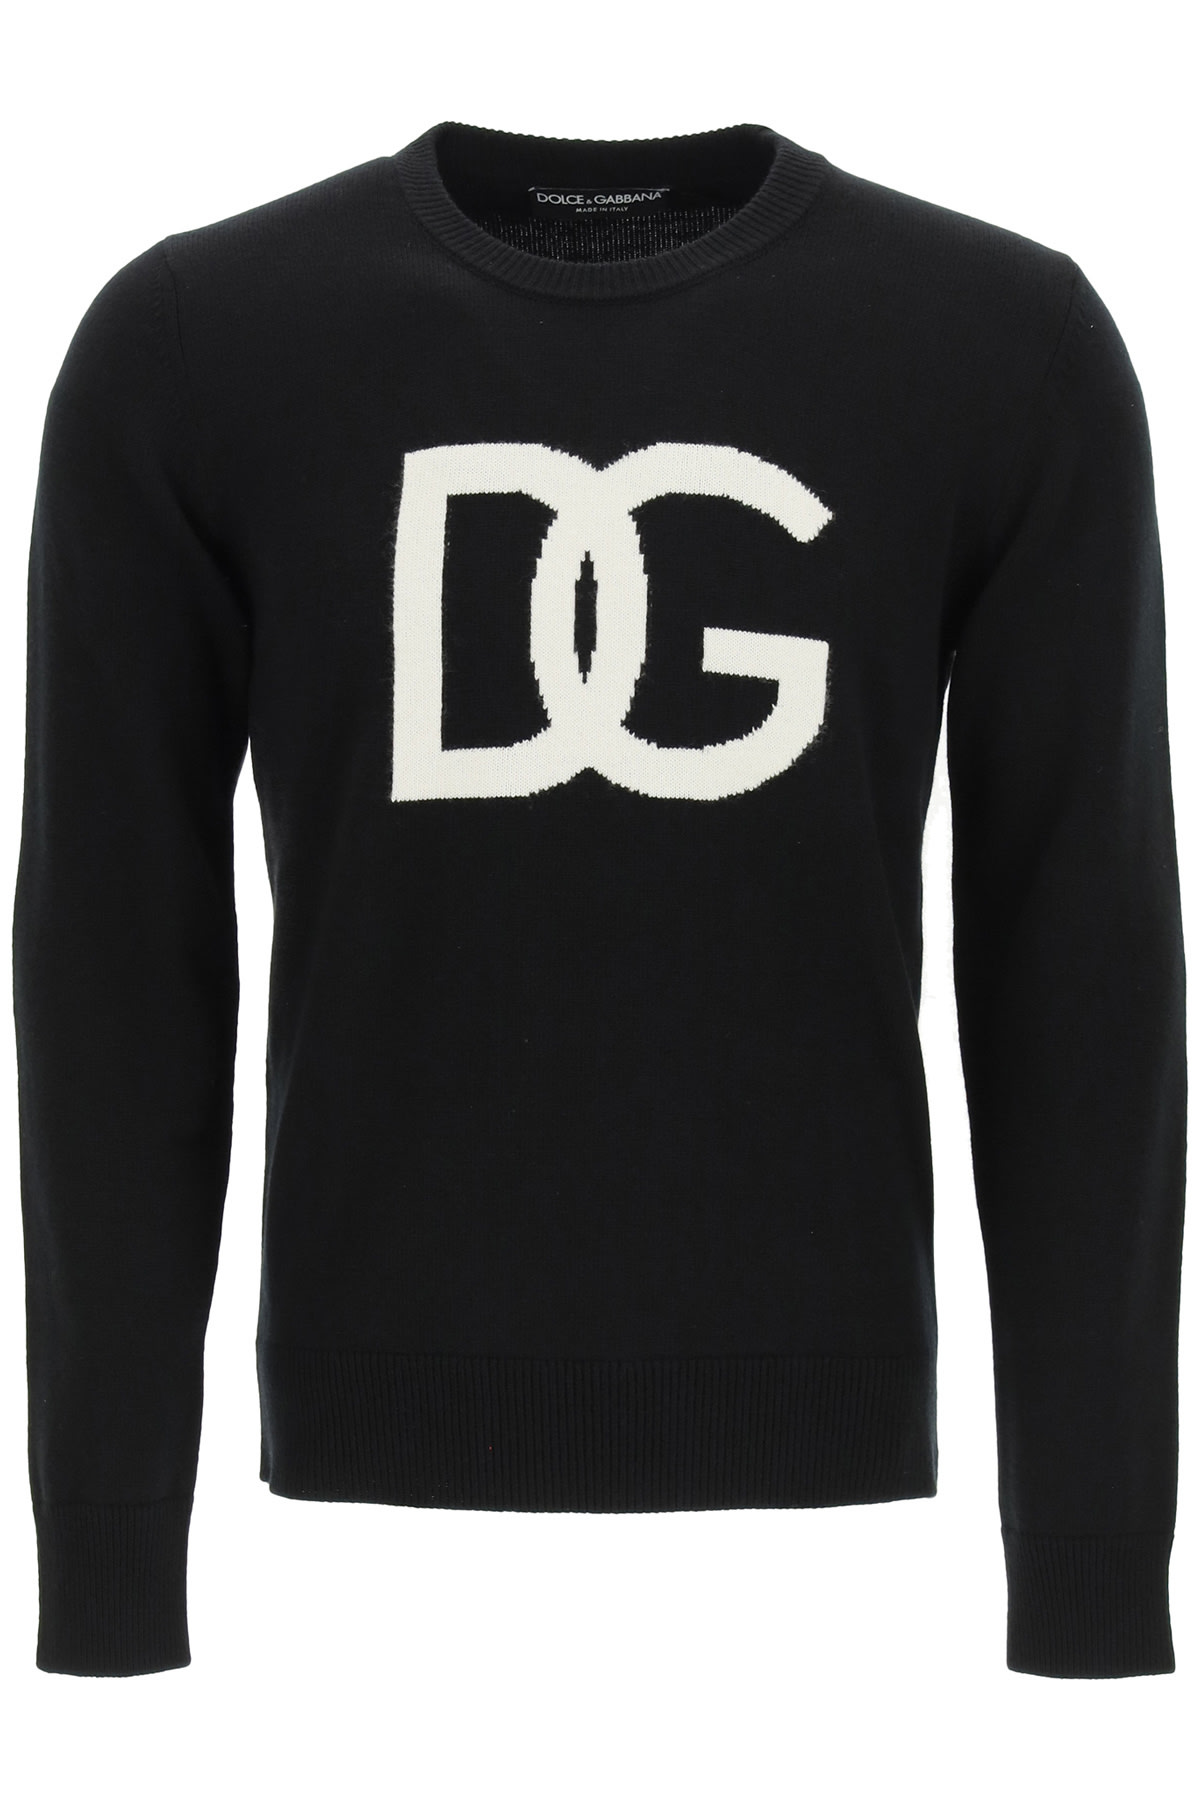 Dolce & Gabbana Dg Logo Intarsia Sweater